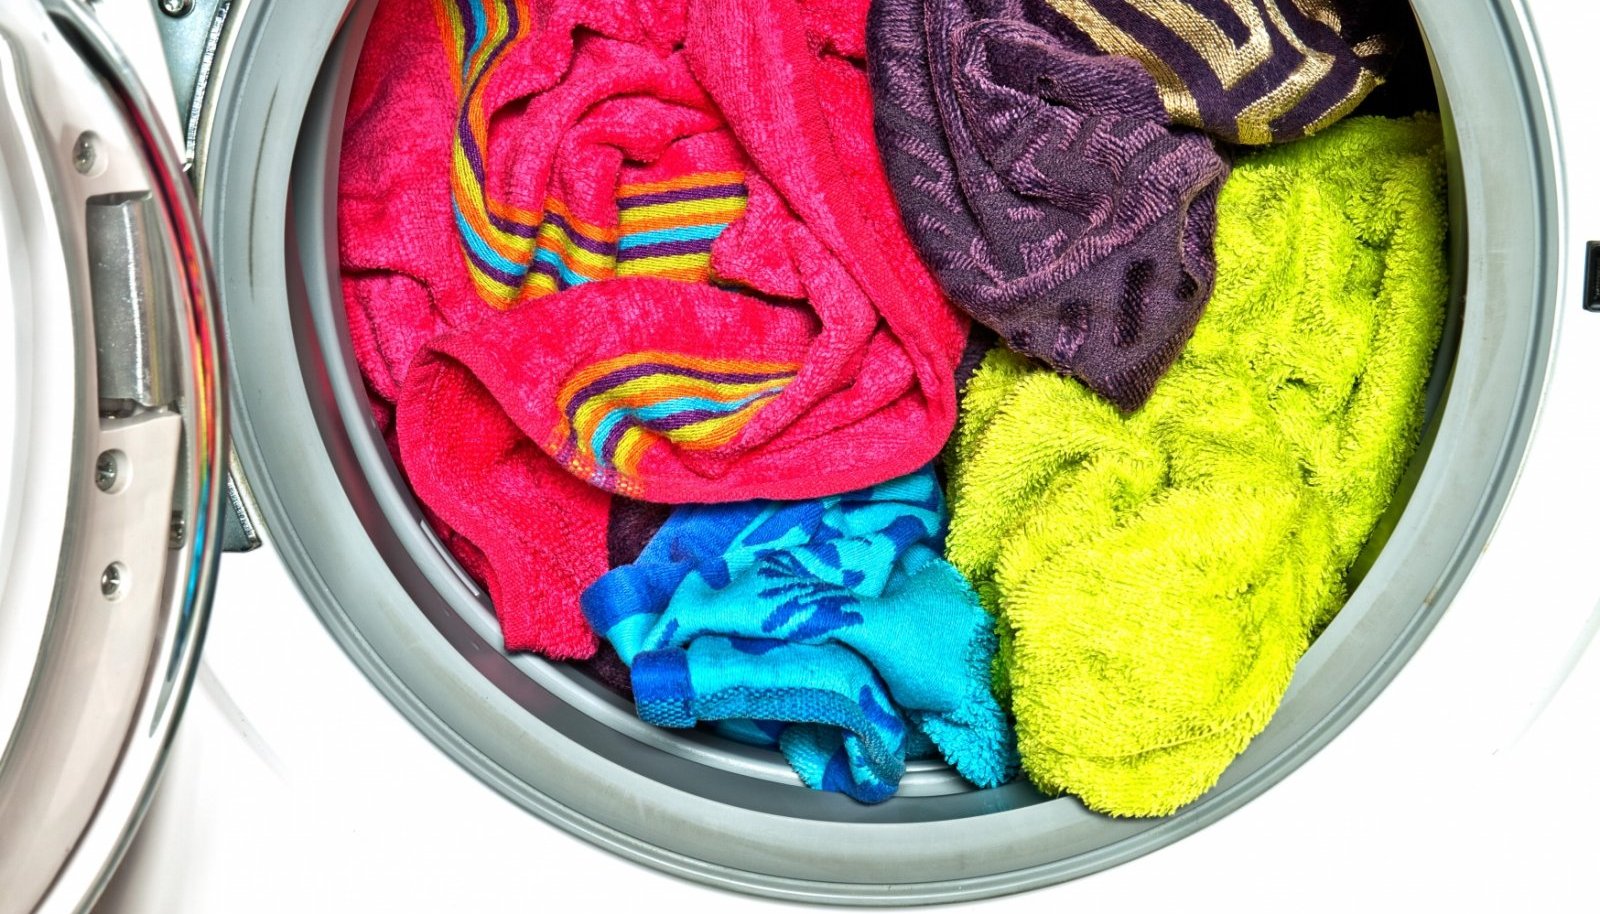 Как постирать полотенца в стиральной машине. Цветные вещи. Мятое белье в машинке. Вонючее полотенце. Одежда после стирки пахнет затхлостью.